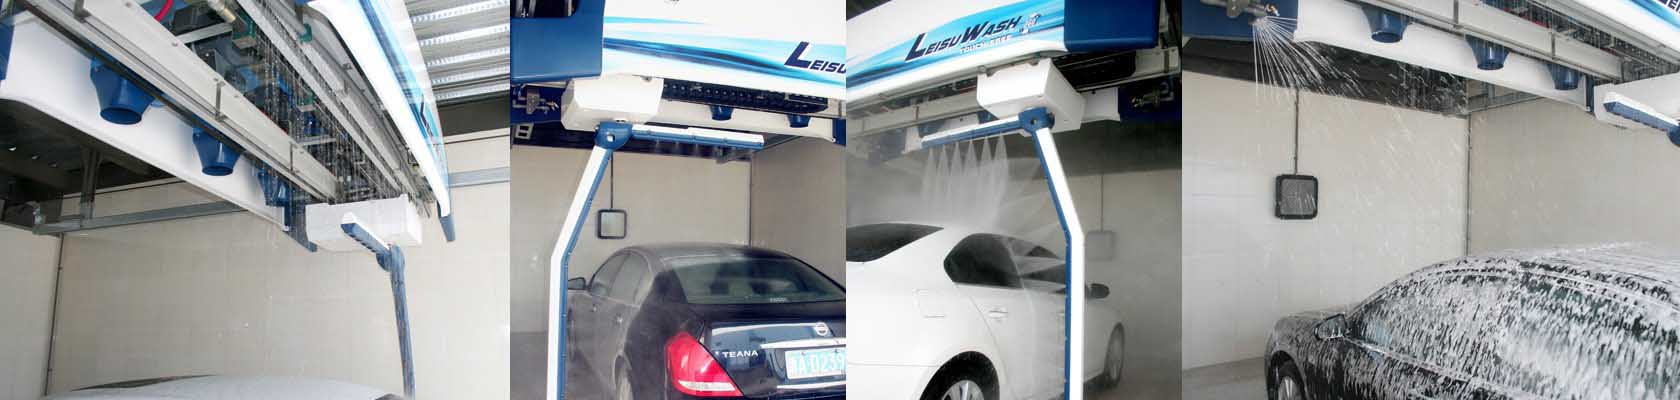 car wash system